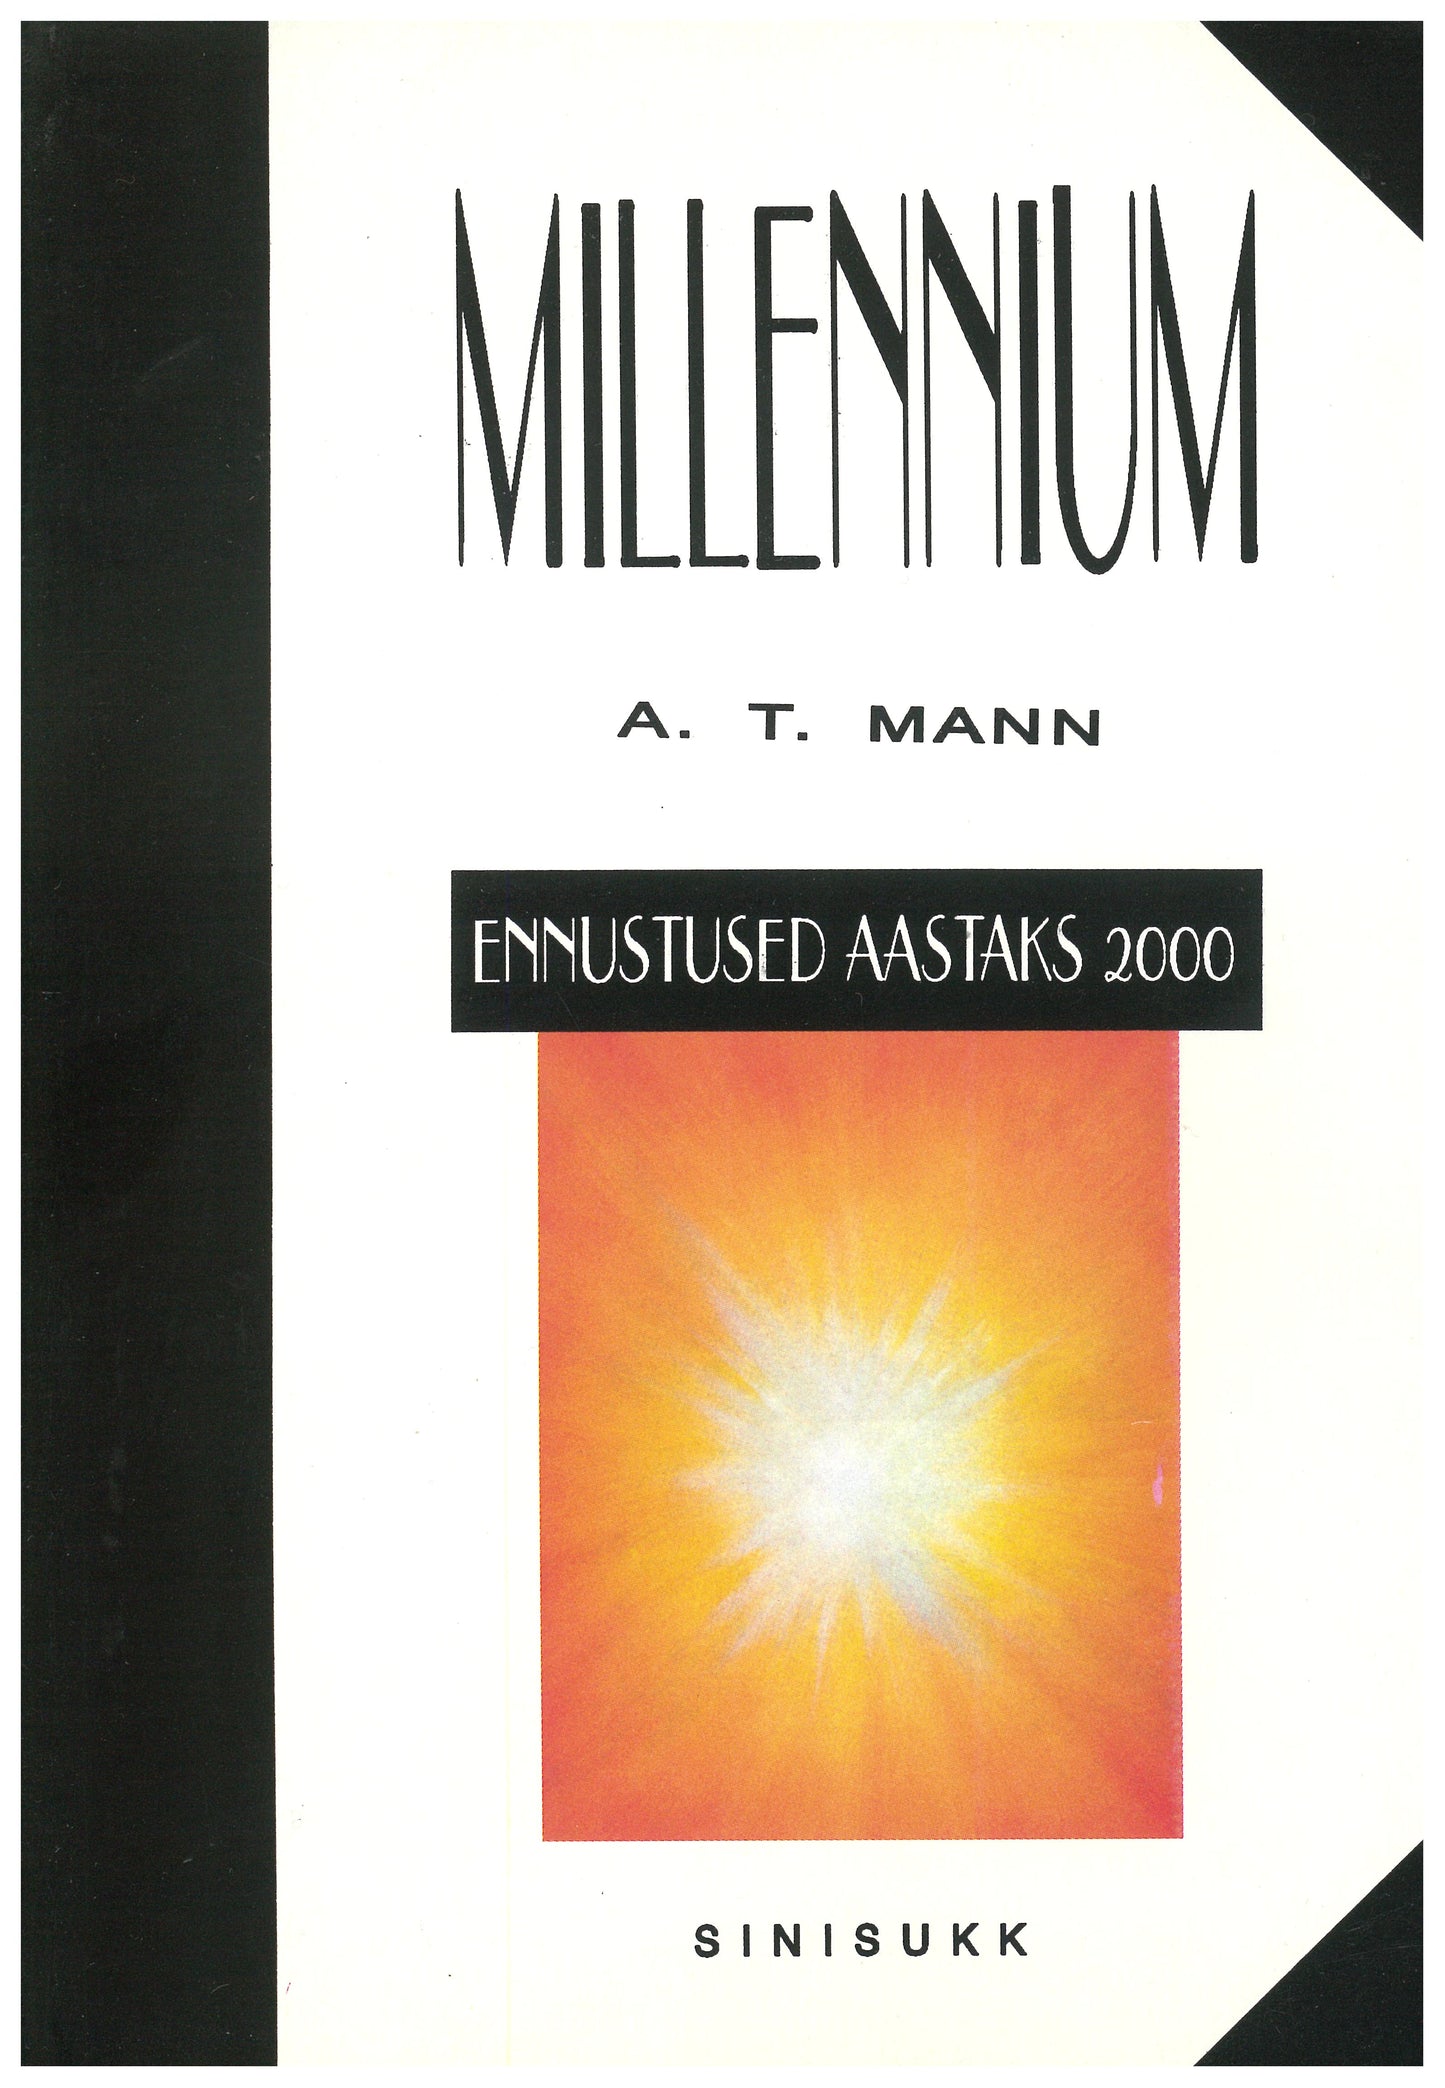 Millennium - ennustused aastaks 2000